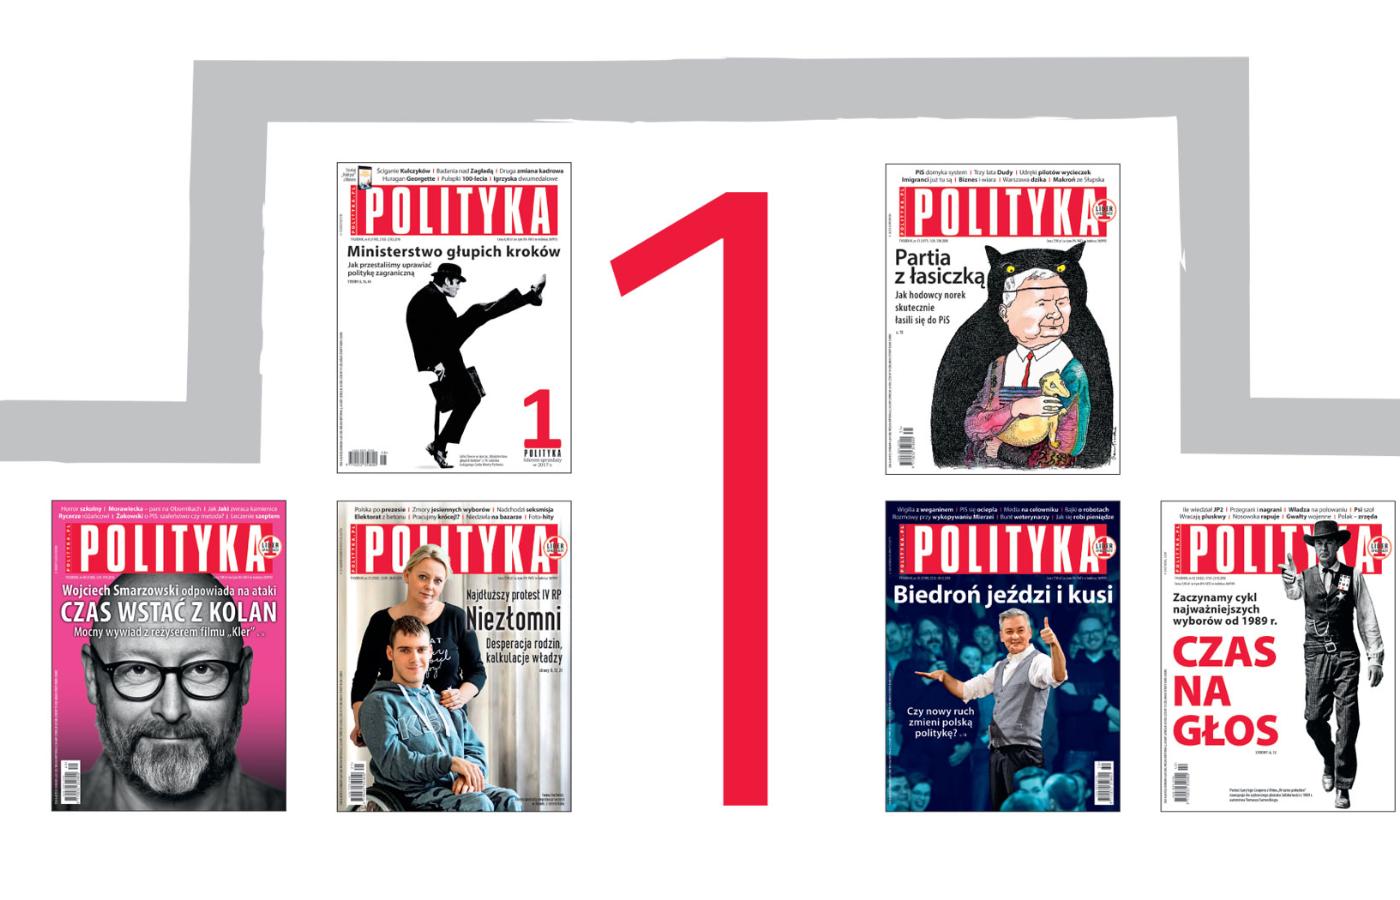 W zeszłym roku POLITYKA była najchętniej kupowanym tygodnikiem opinii w Polsce.